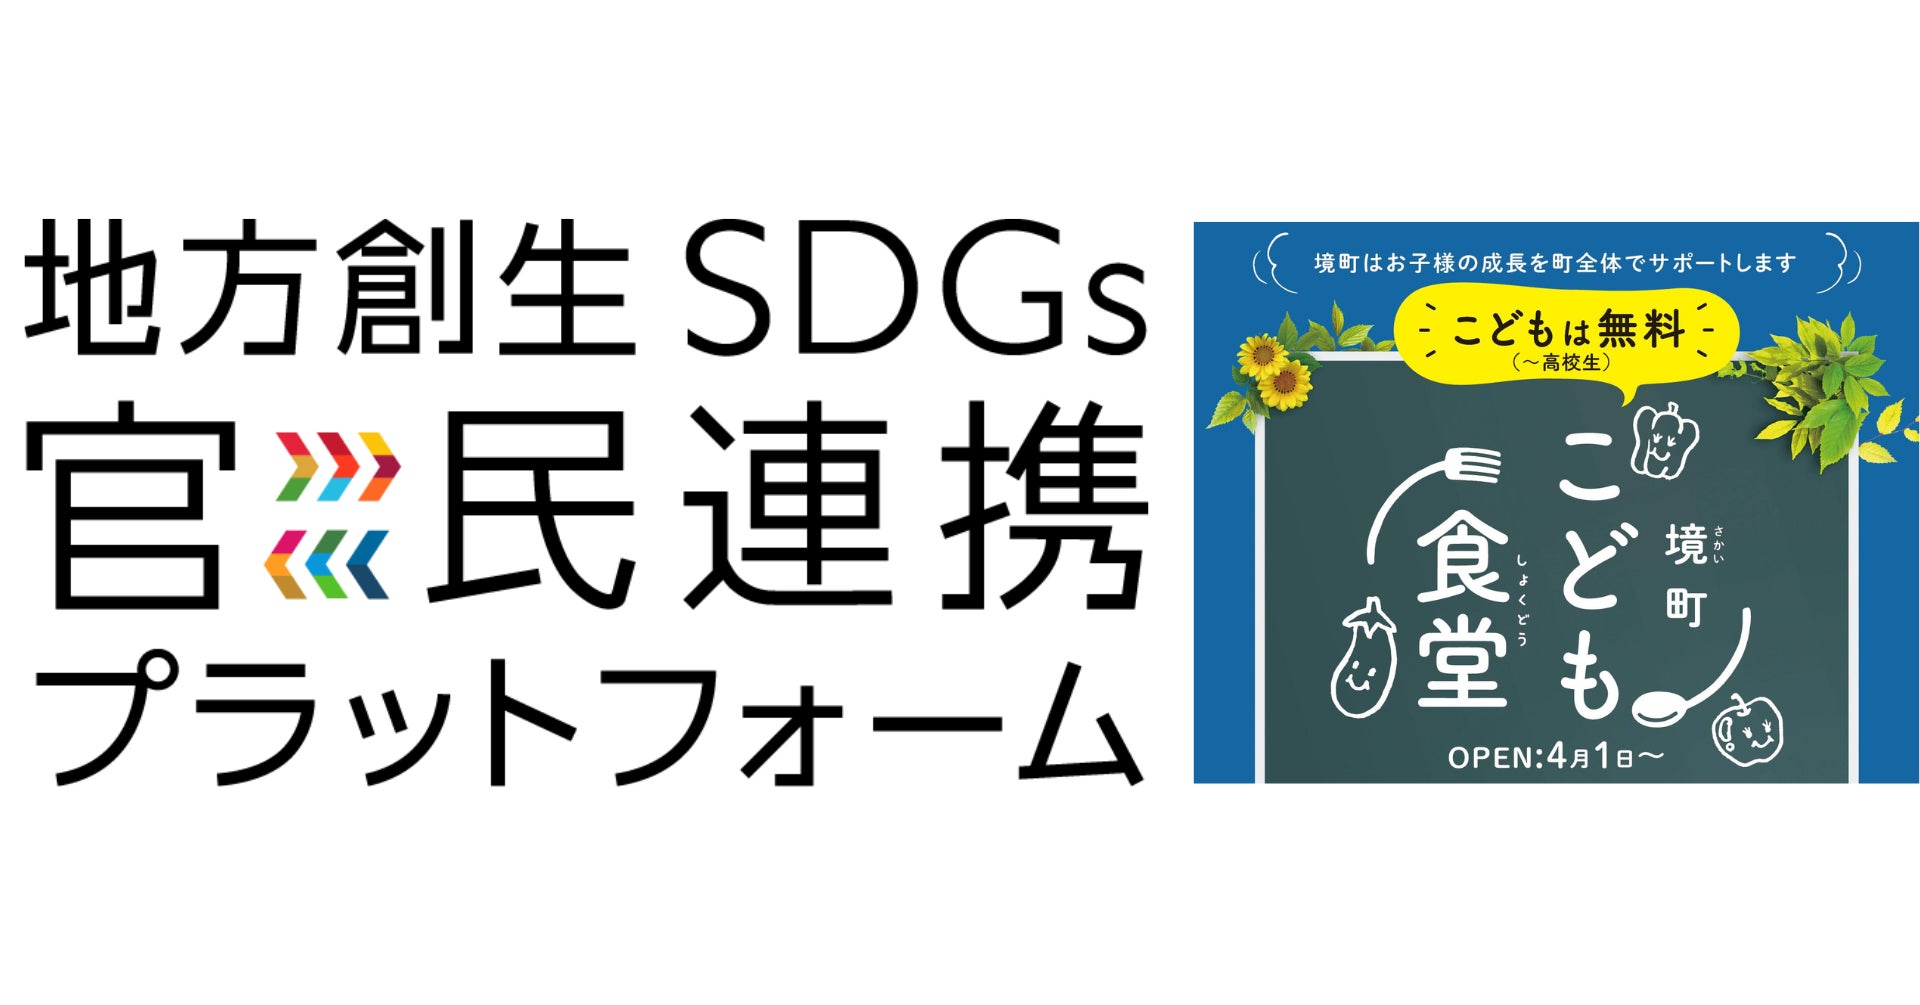 「街ごとこども食堂」の「ごちめし」と茨城県境町、地方創生SDGs官民連携プラットフォームのマッチングイベントに参加のサブ画像1